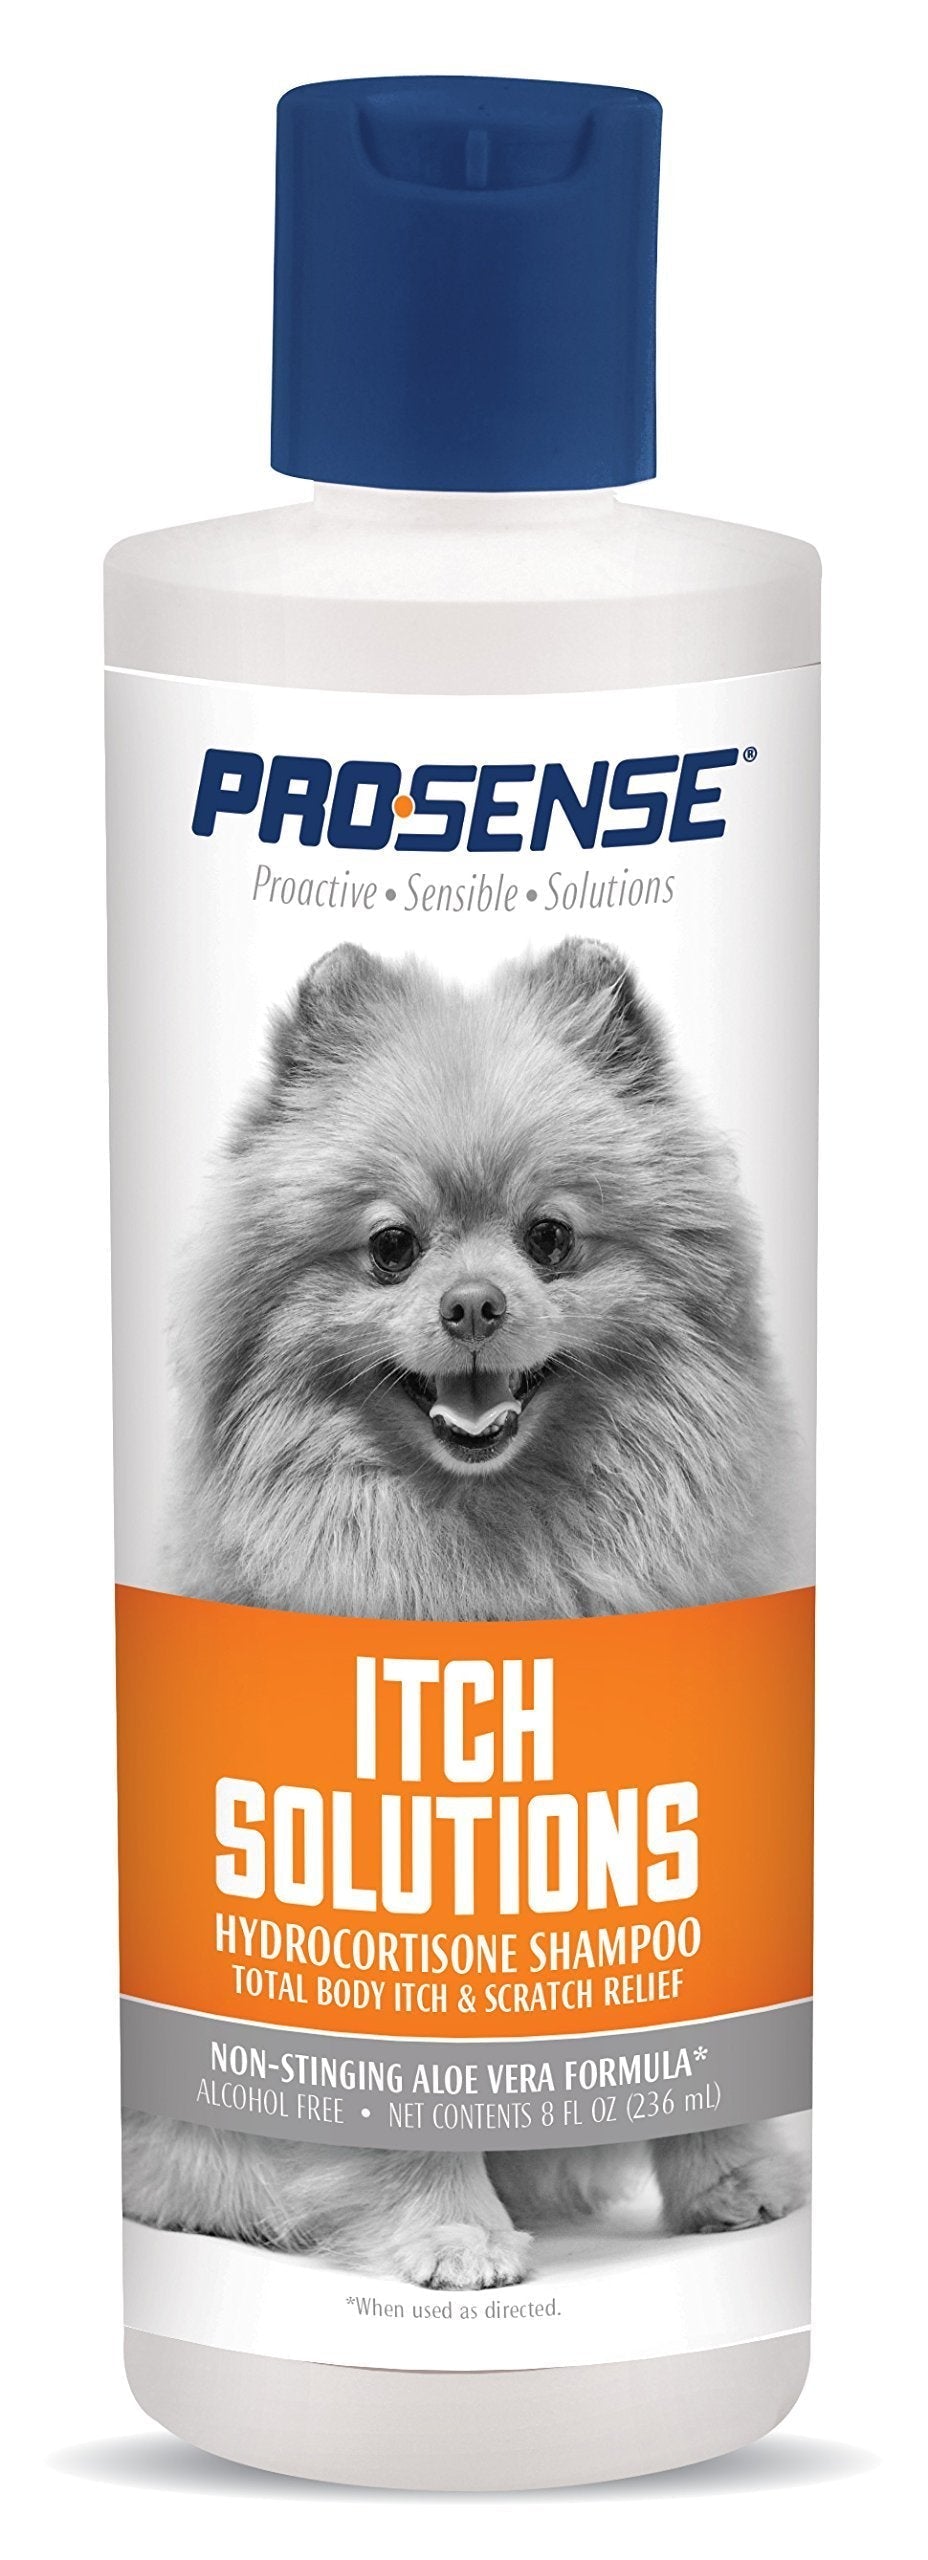 [Australia] - Pro-Sense Itch Relief Hydrocortisone Shampoo, 8-Ounce - P-82693 